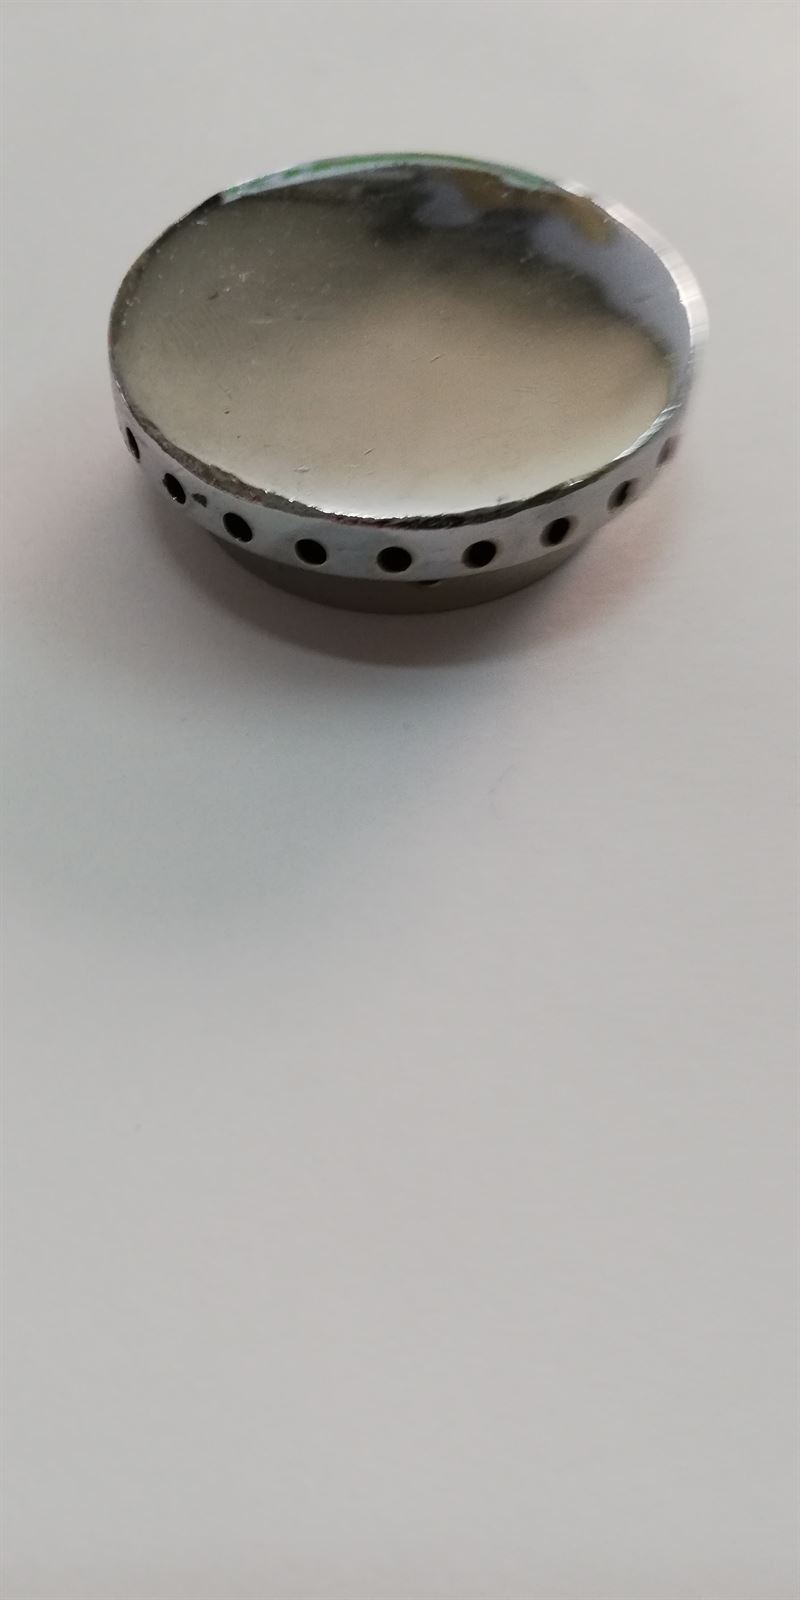 TAPA QUEMADOR COCINA ZANUSSI, diametro 50mm, 44ZN0101 - Imagen 1